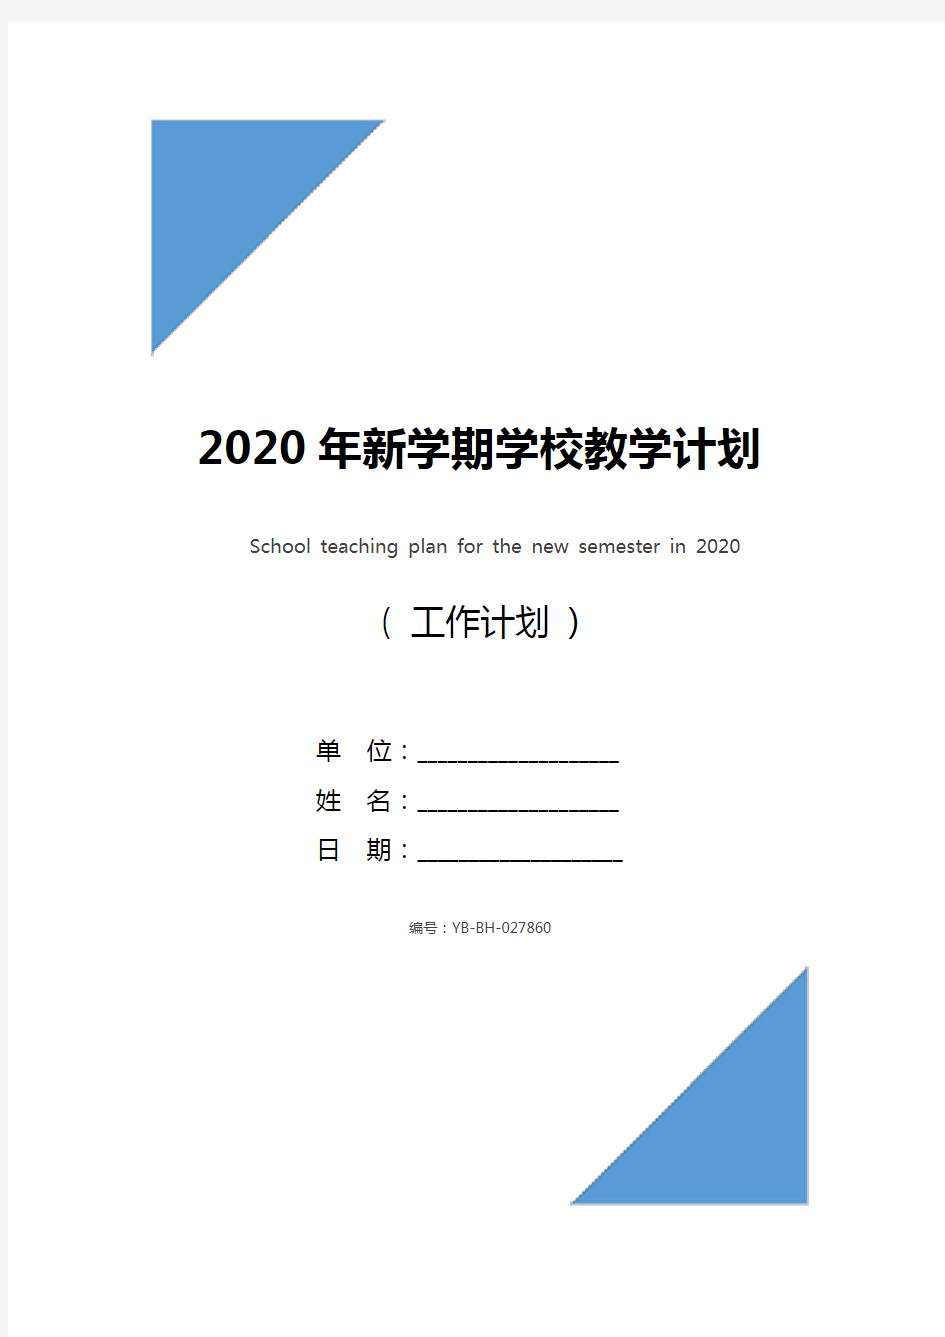 2020年新学期学校教学计划